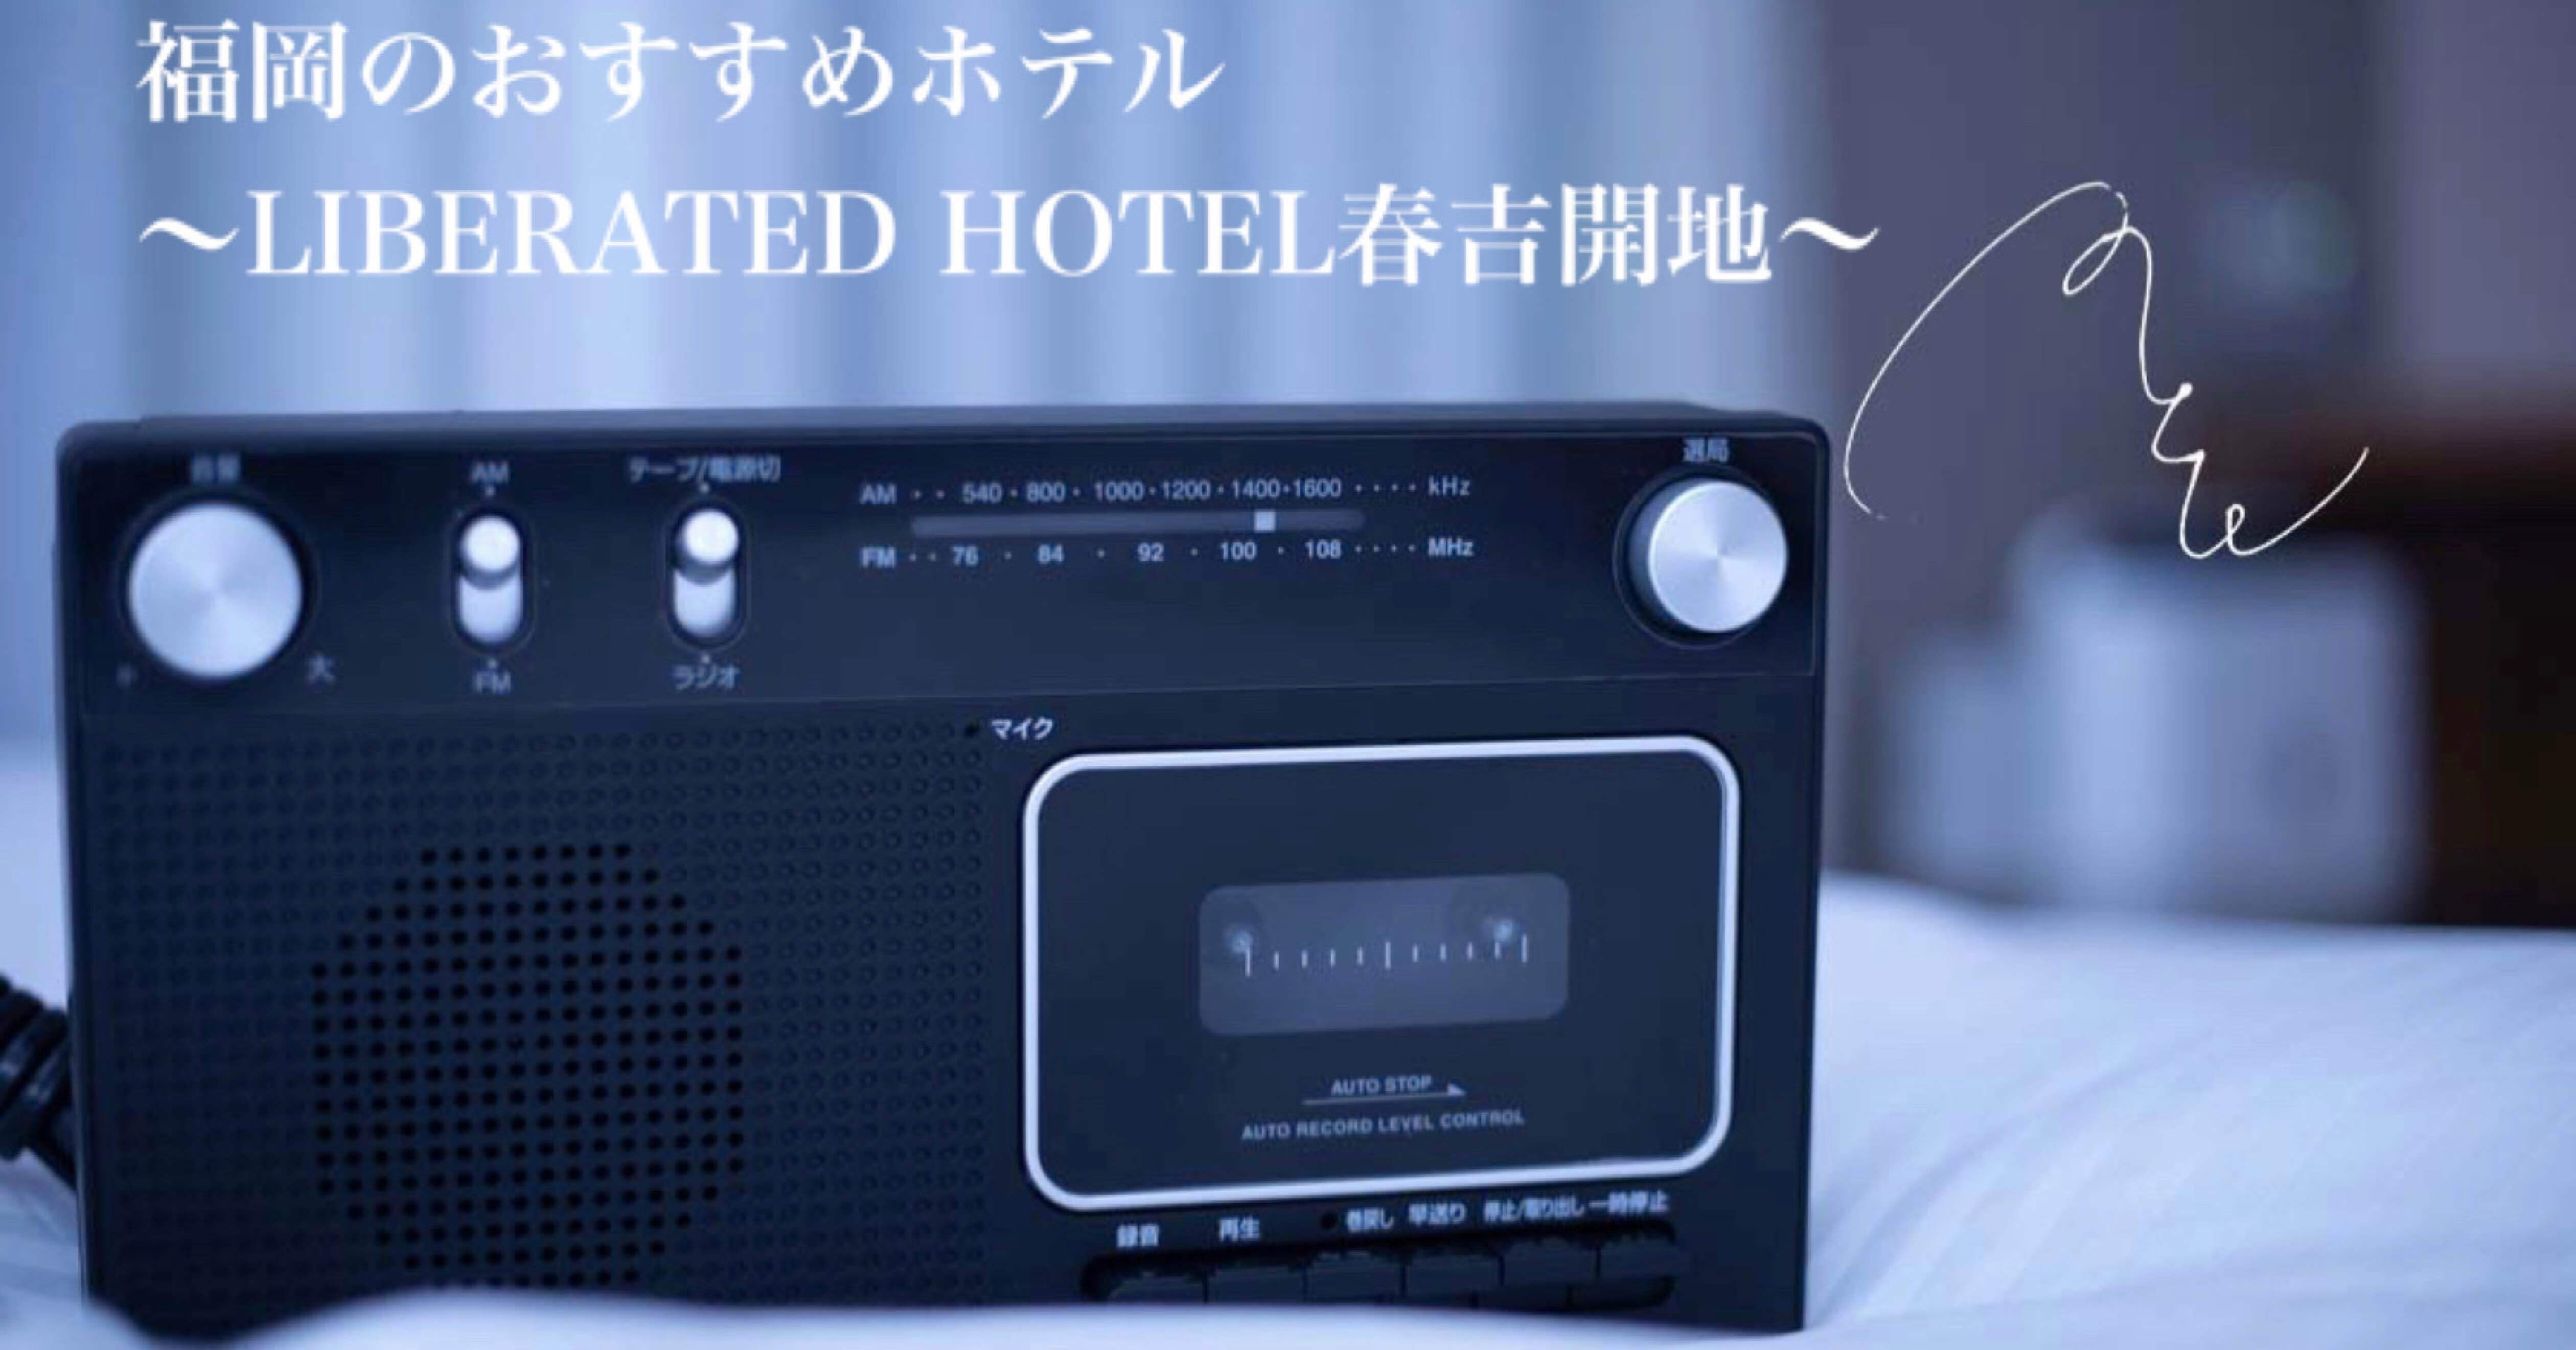 272 福岡 おすすめホテル Liberated Hotel春吉開地 旅するフォトマガジン Mとw Note